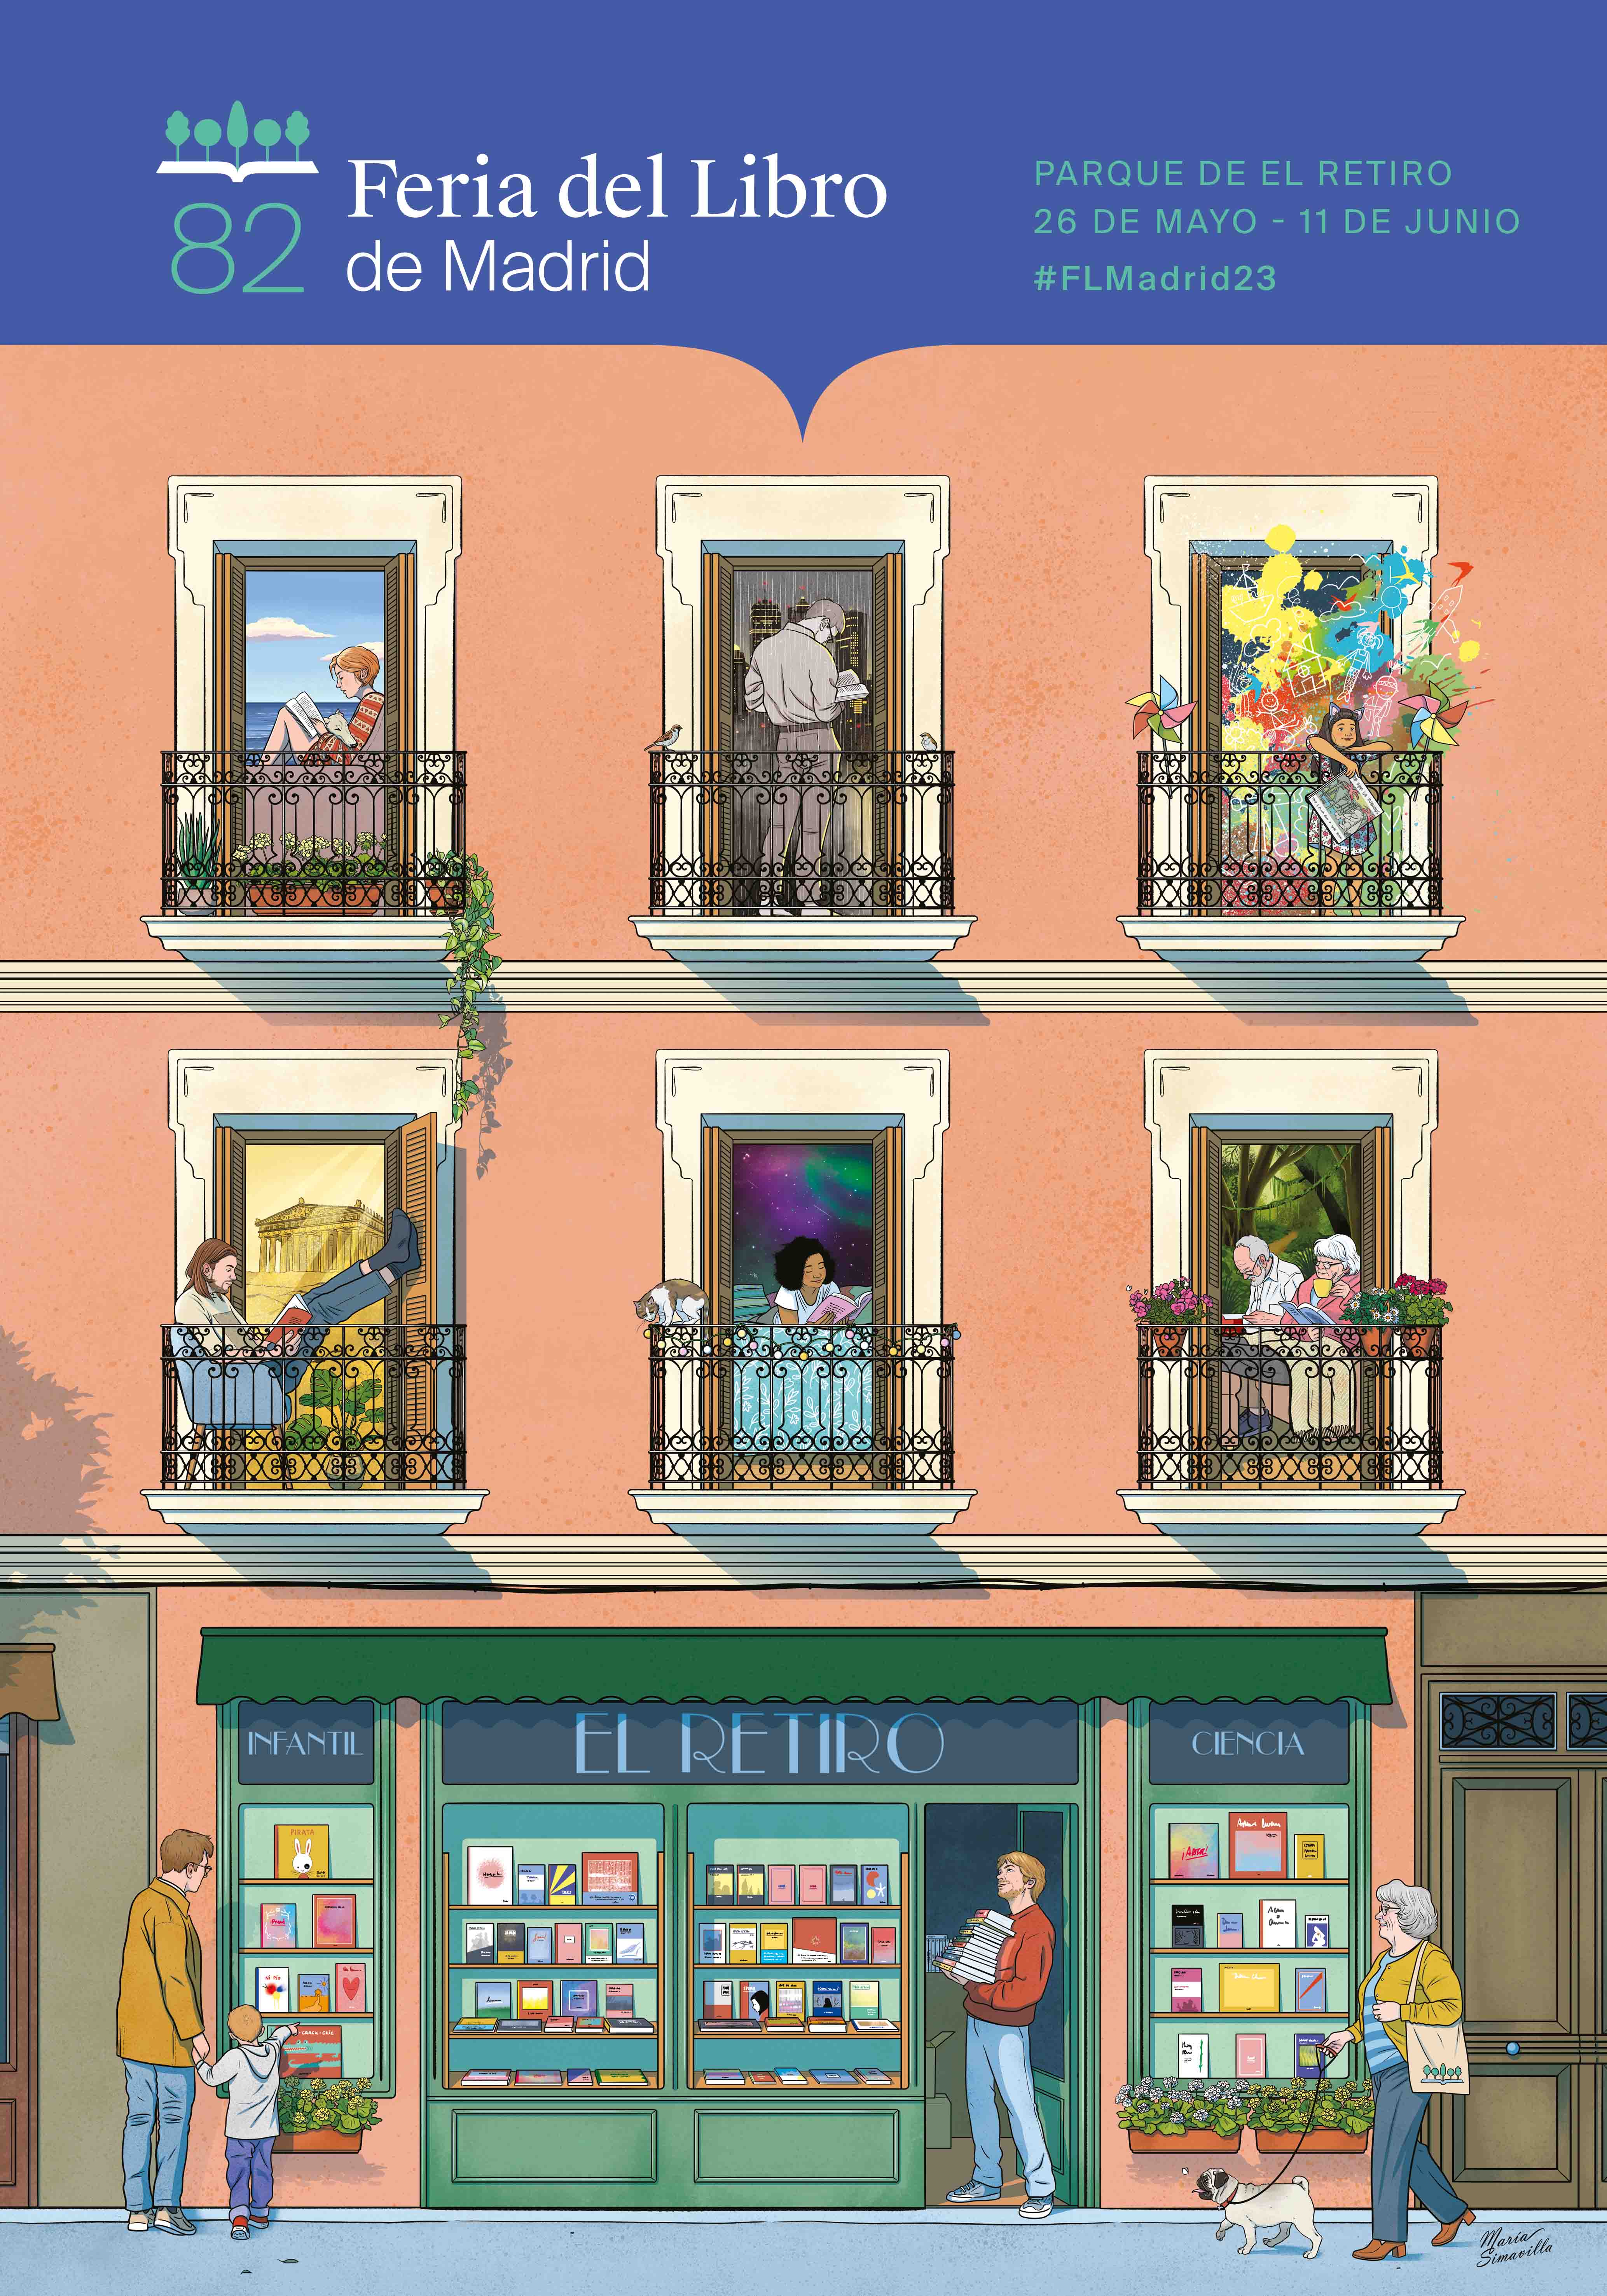 Cartel de la 82 Feria del Libro de Madrid